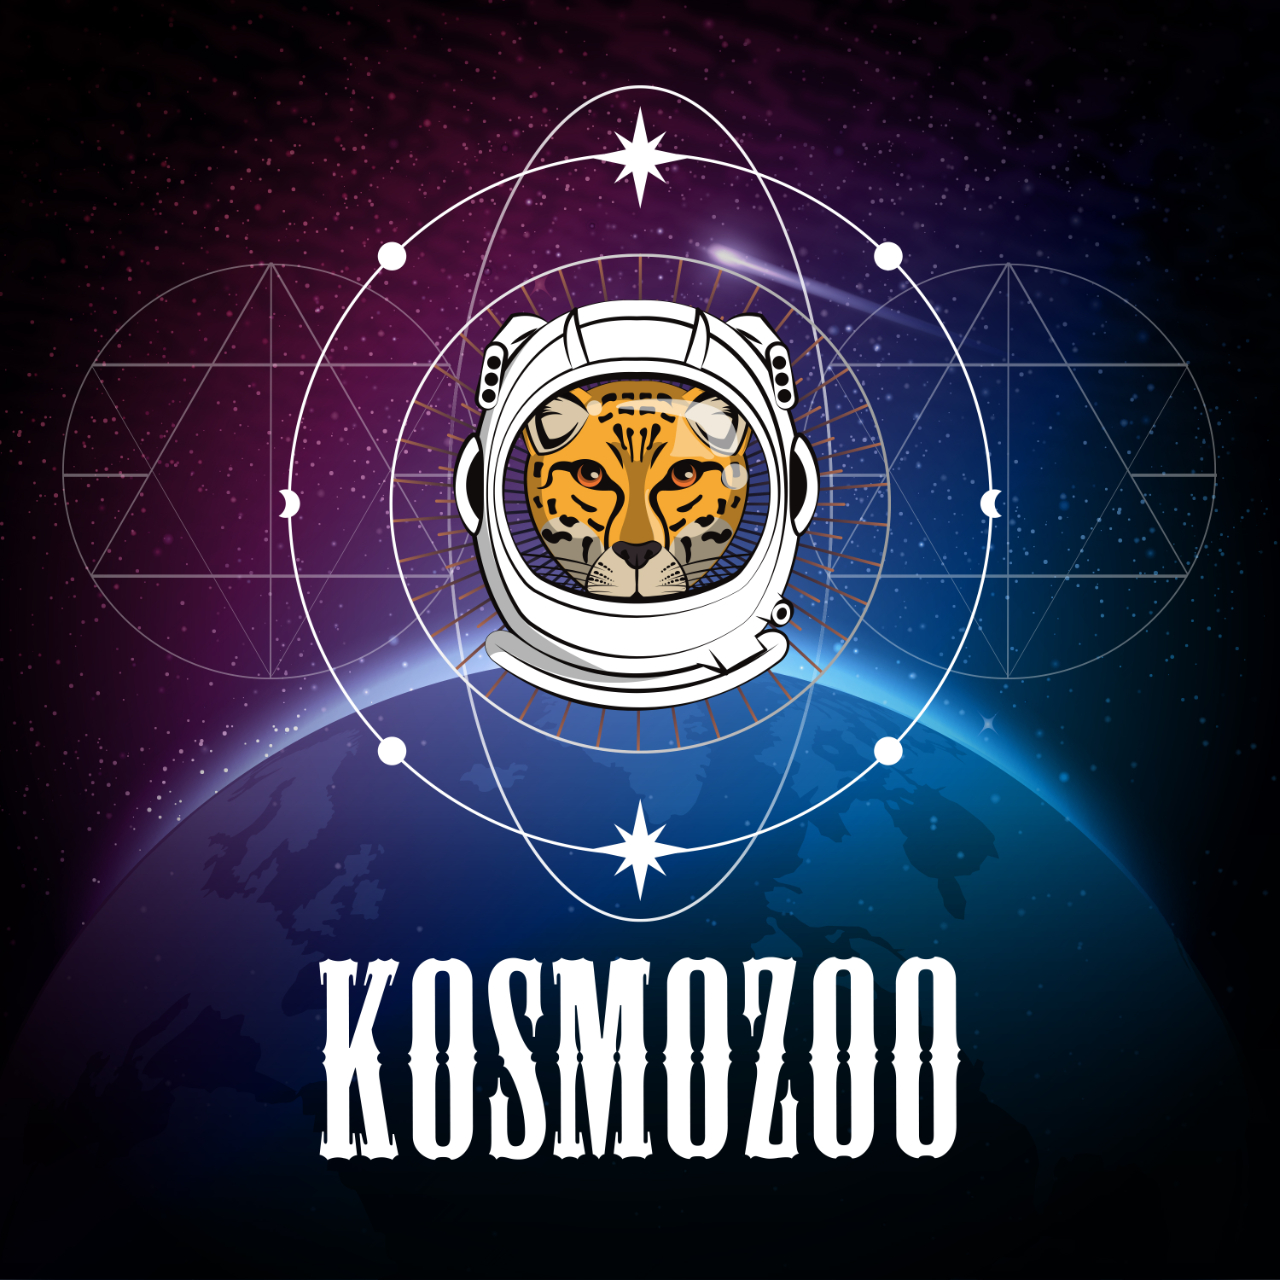 KosmoZoo